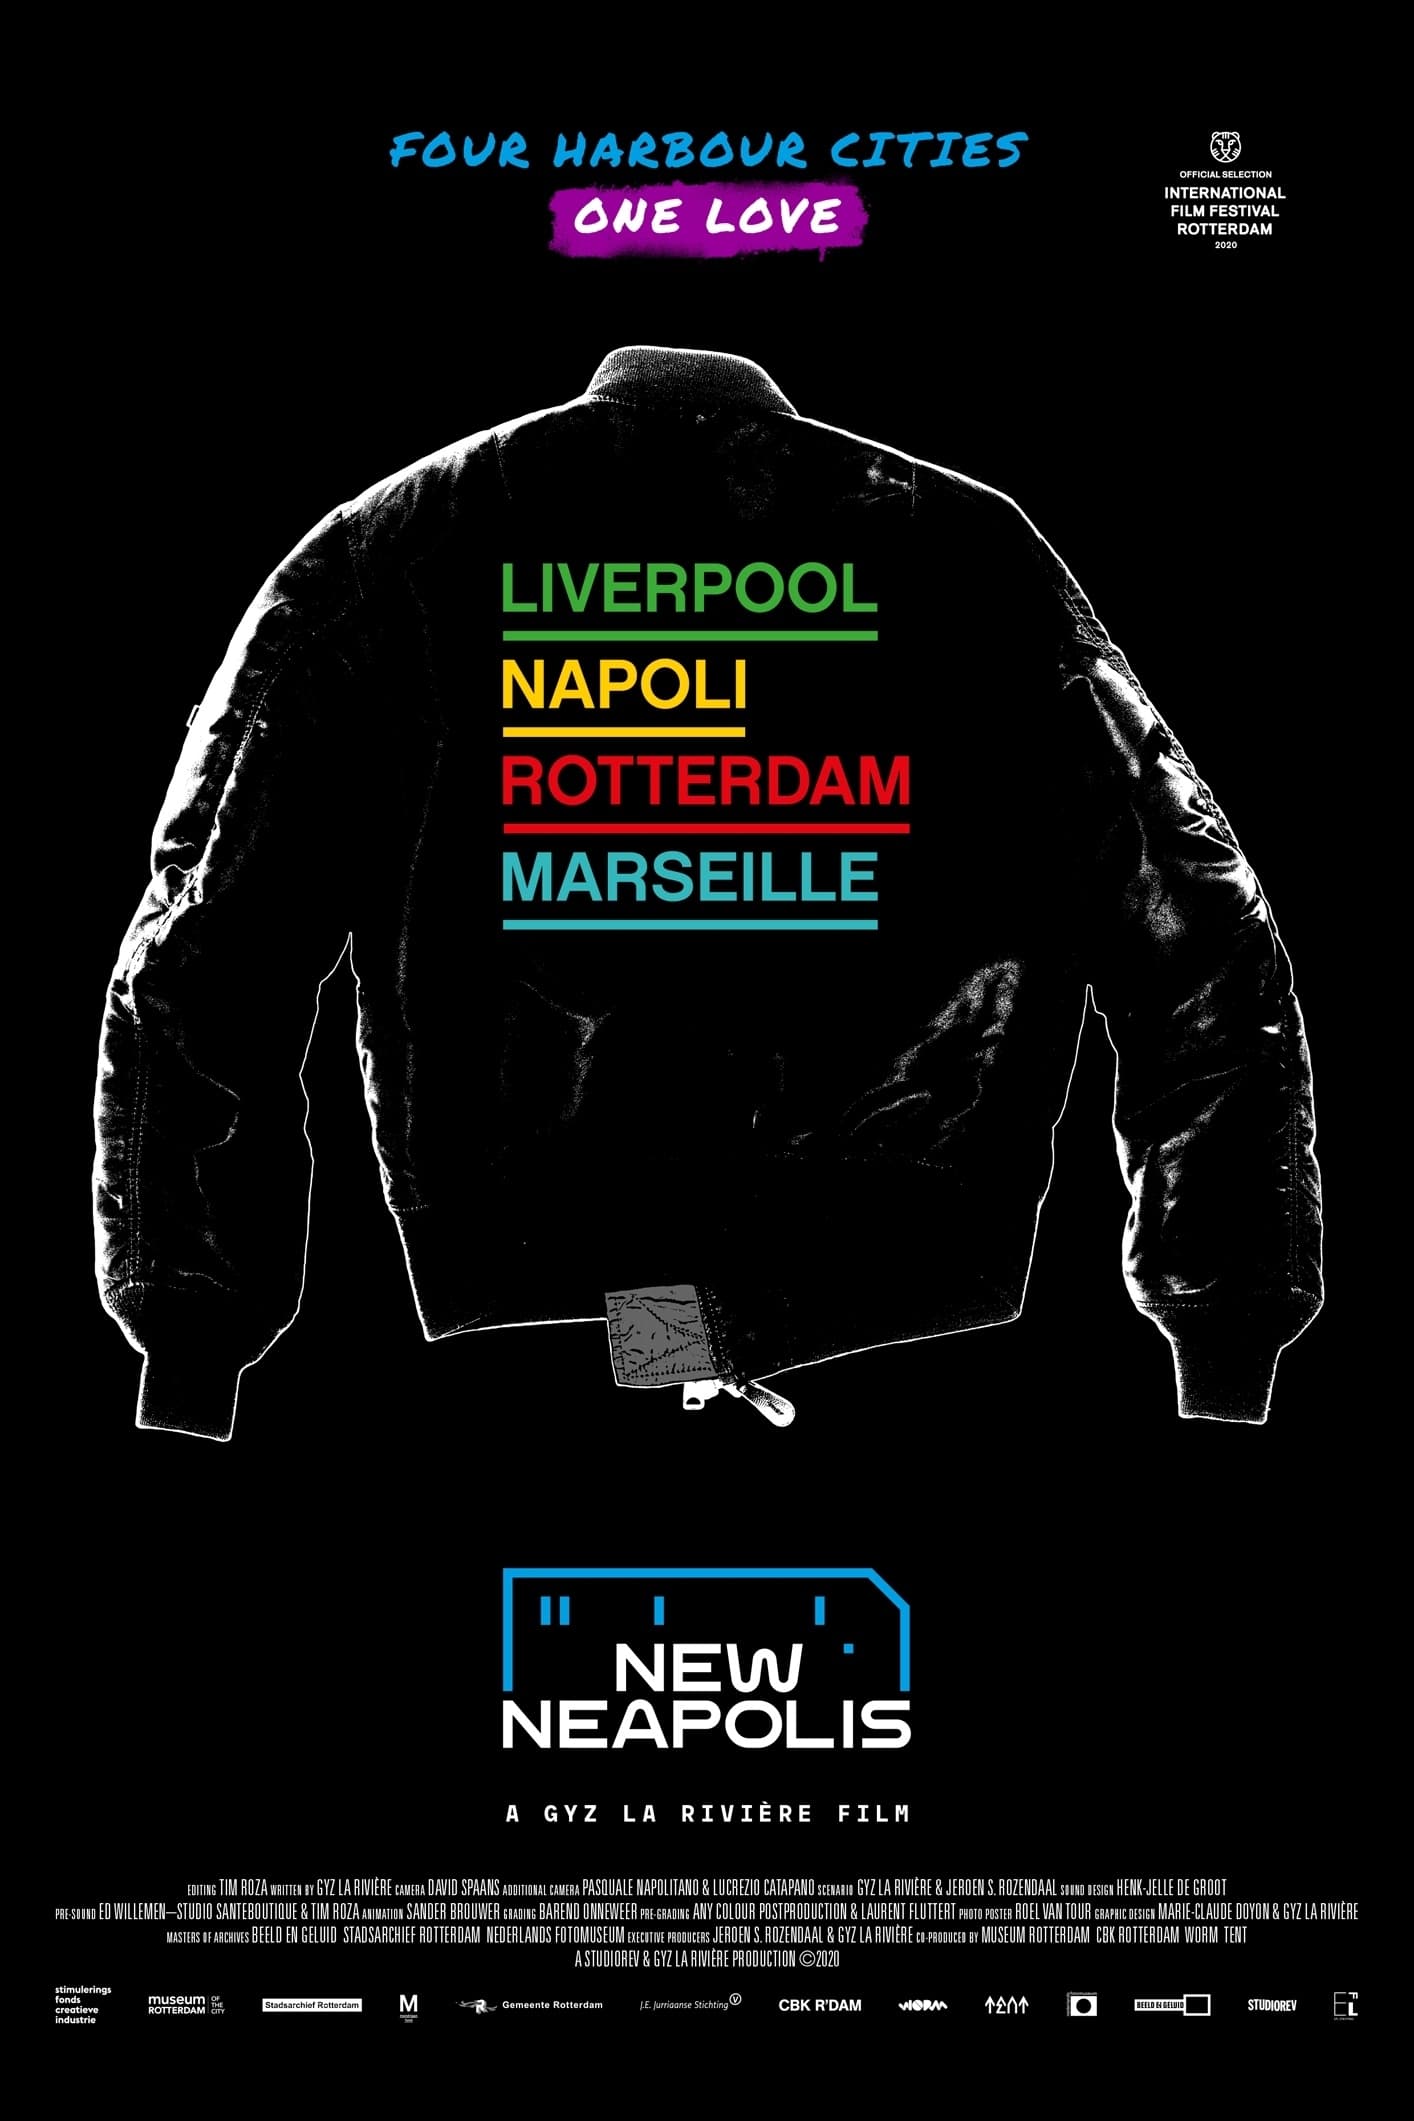 New Neapolis